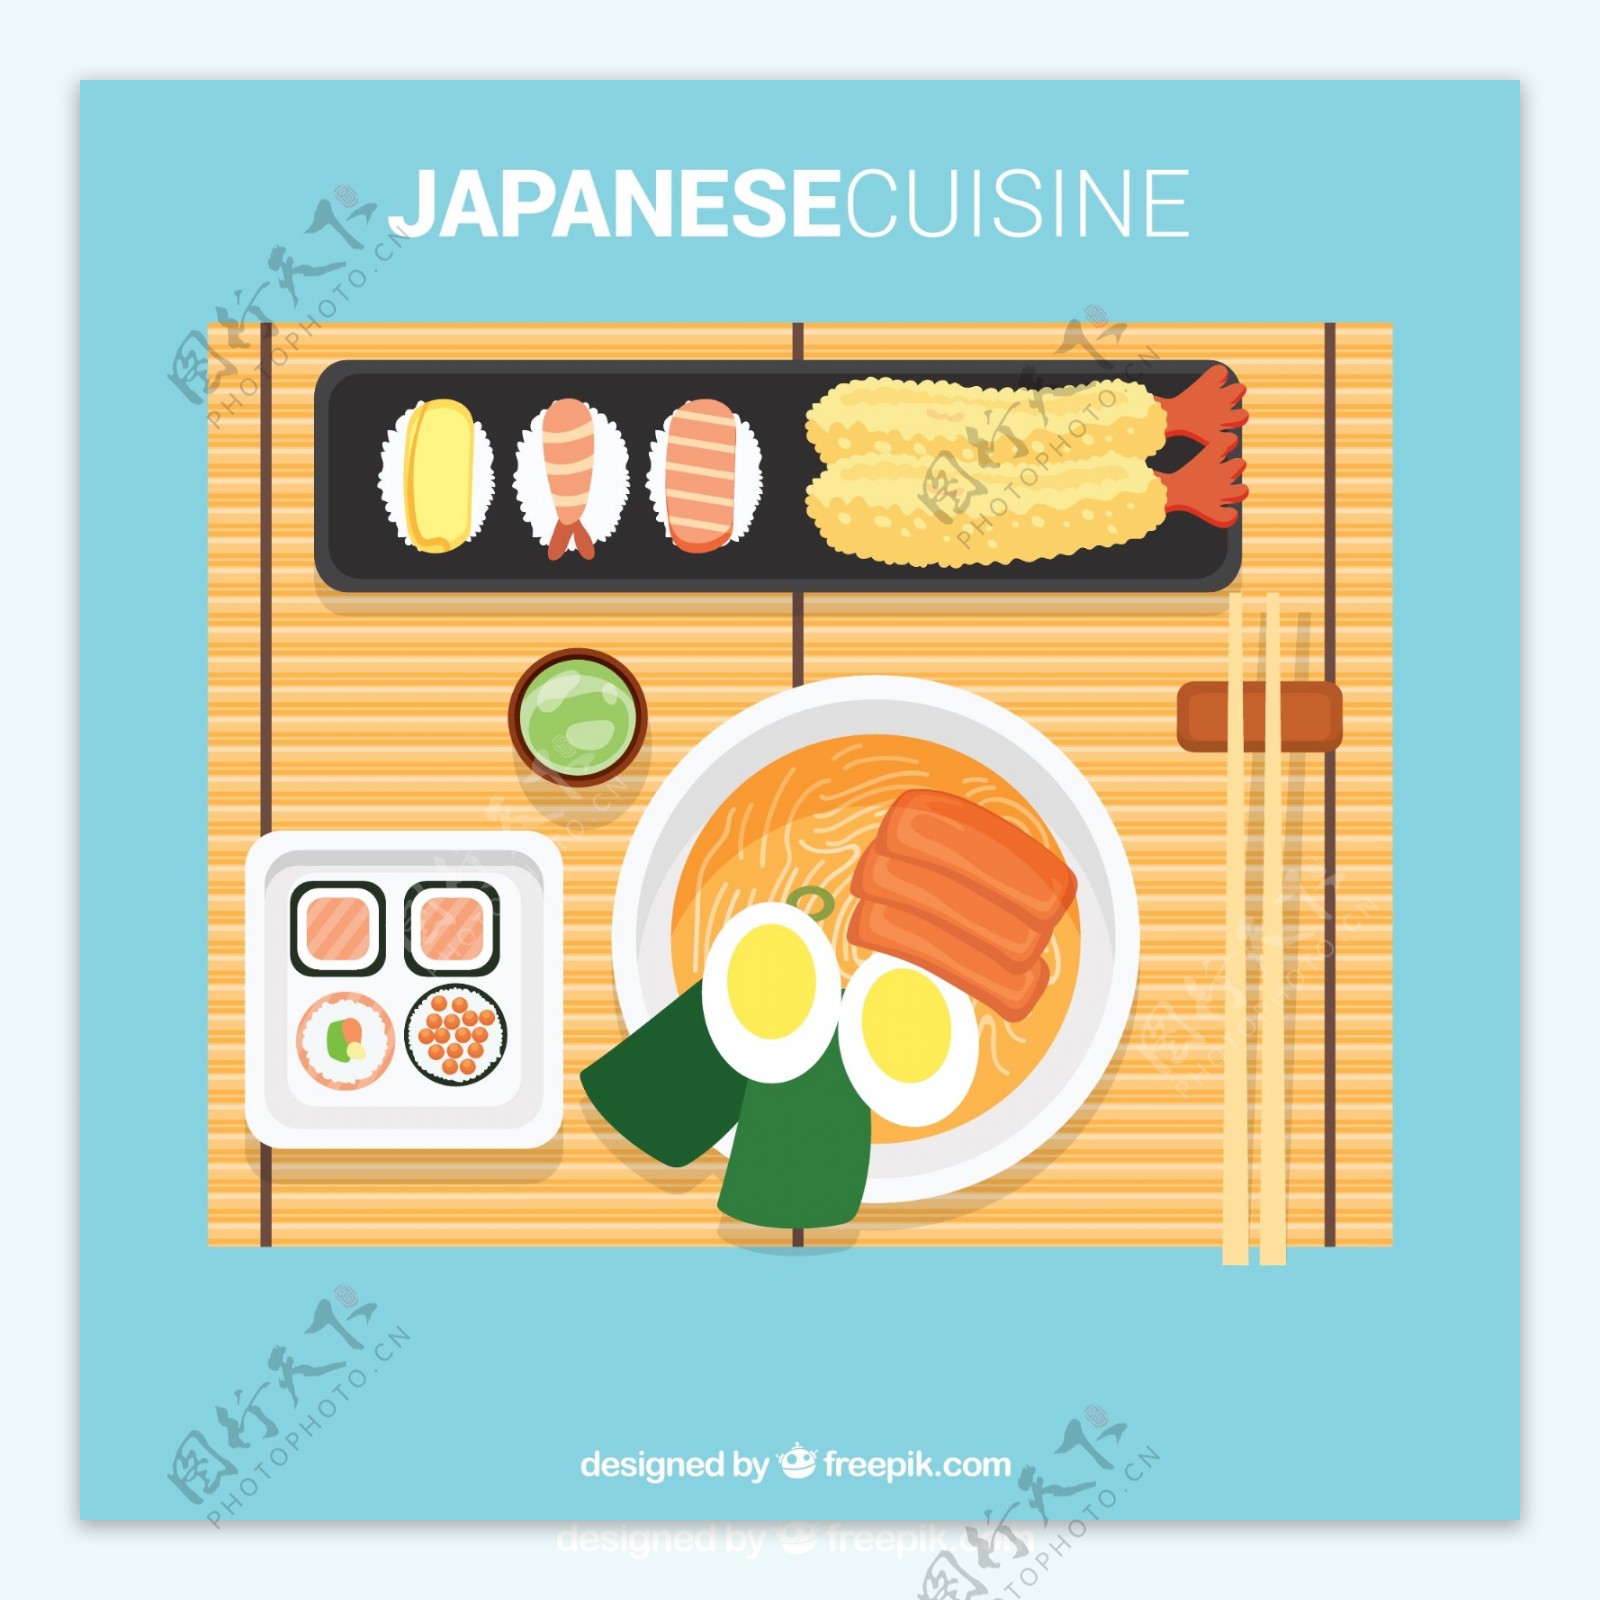 美味日本菜肴俯视图矢量素材